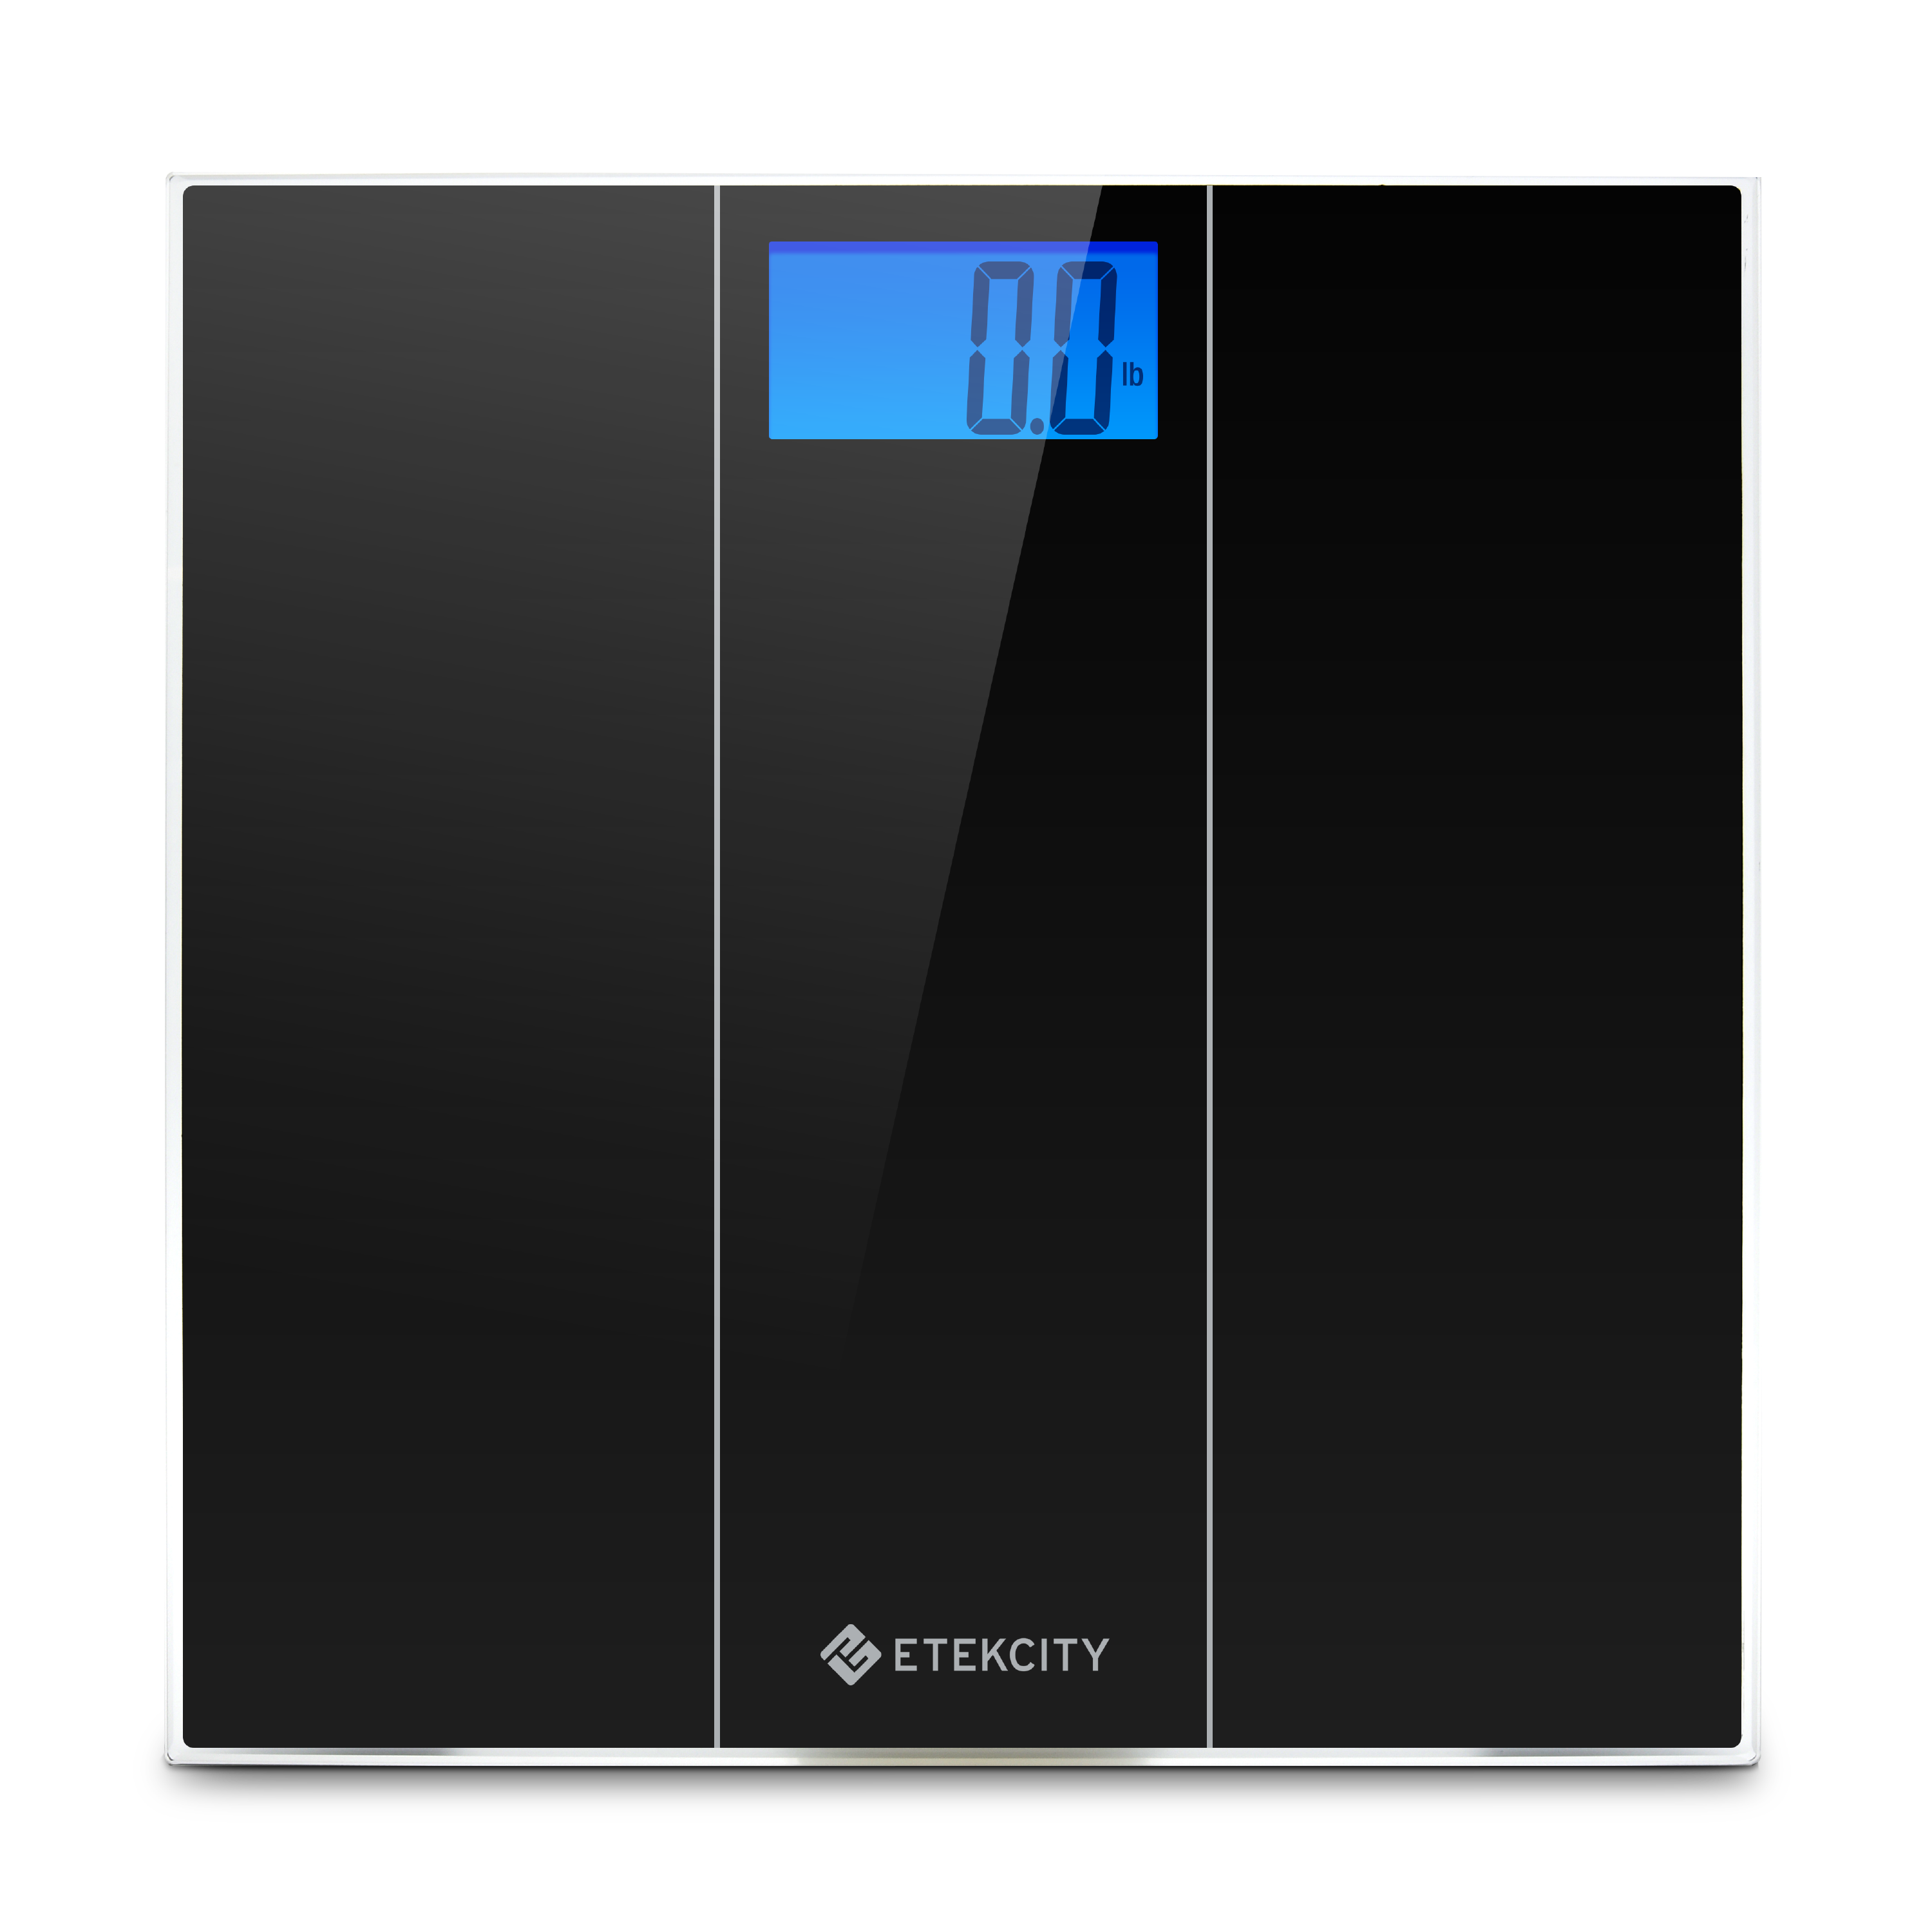 Etekcity Digital Body Weight Bathroom Scale (EB4074C) for sale